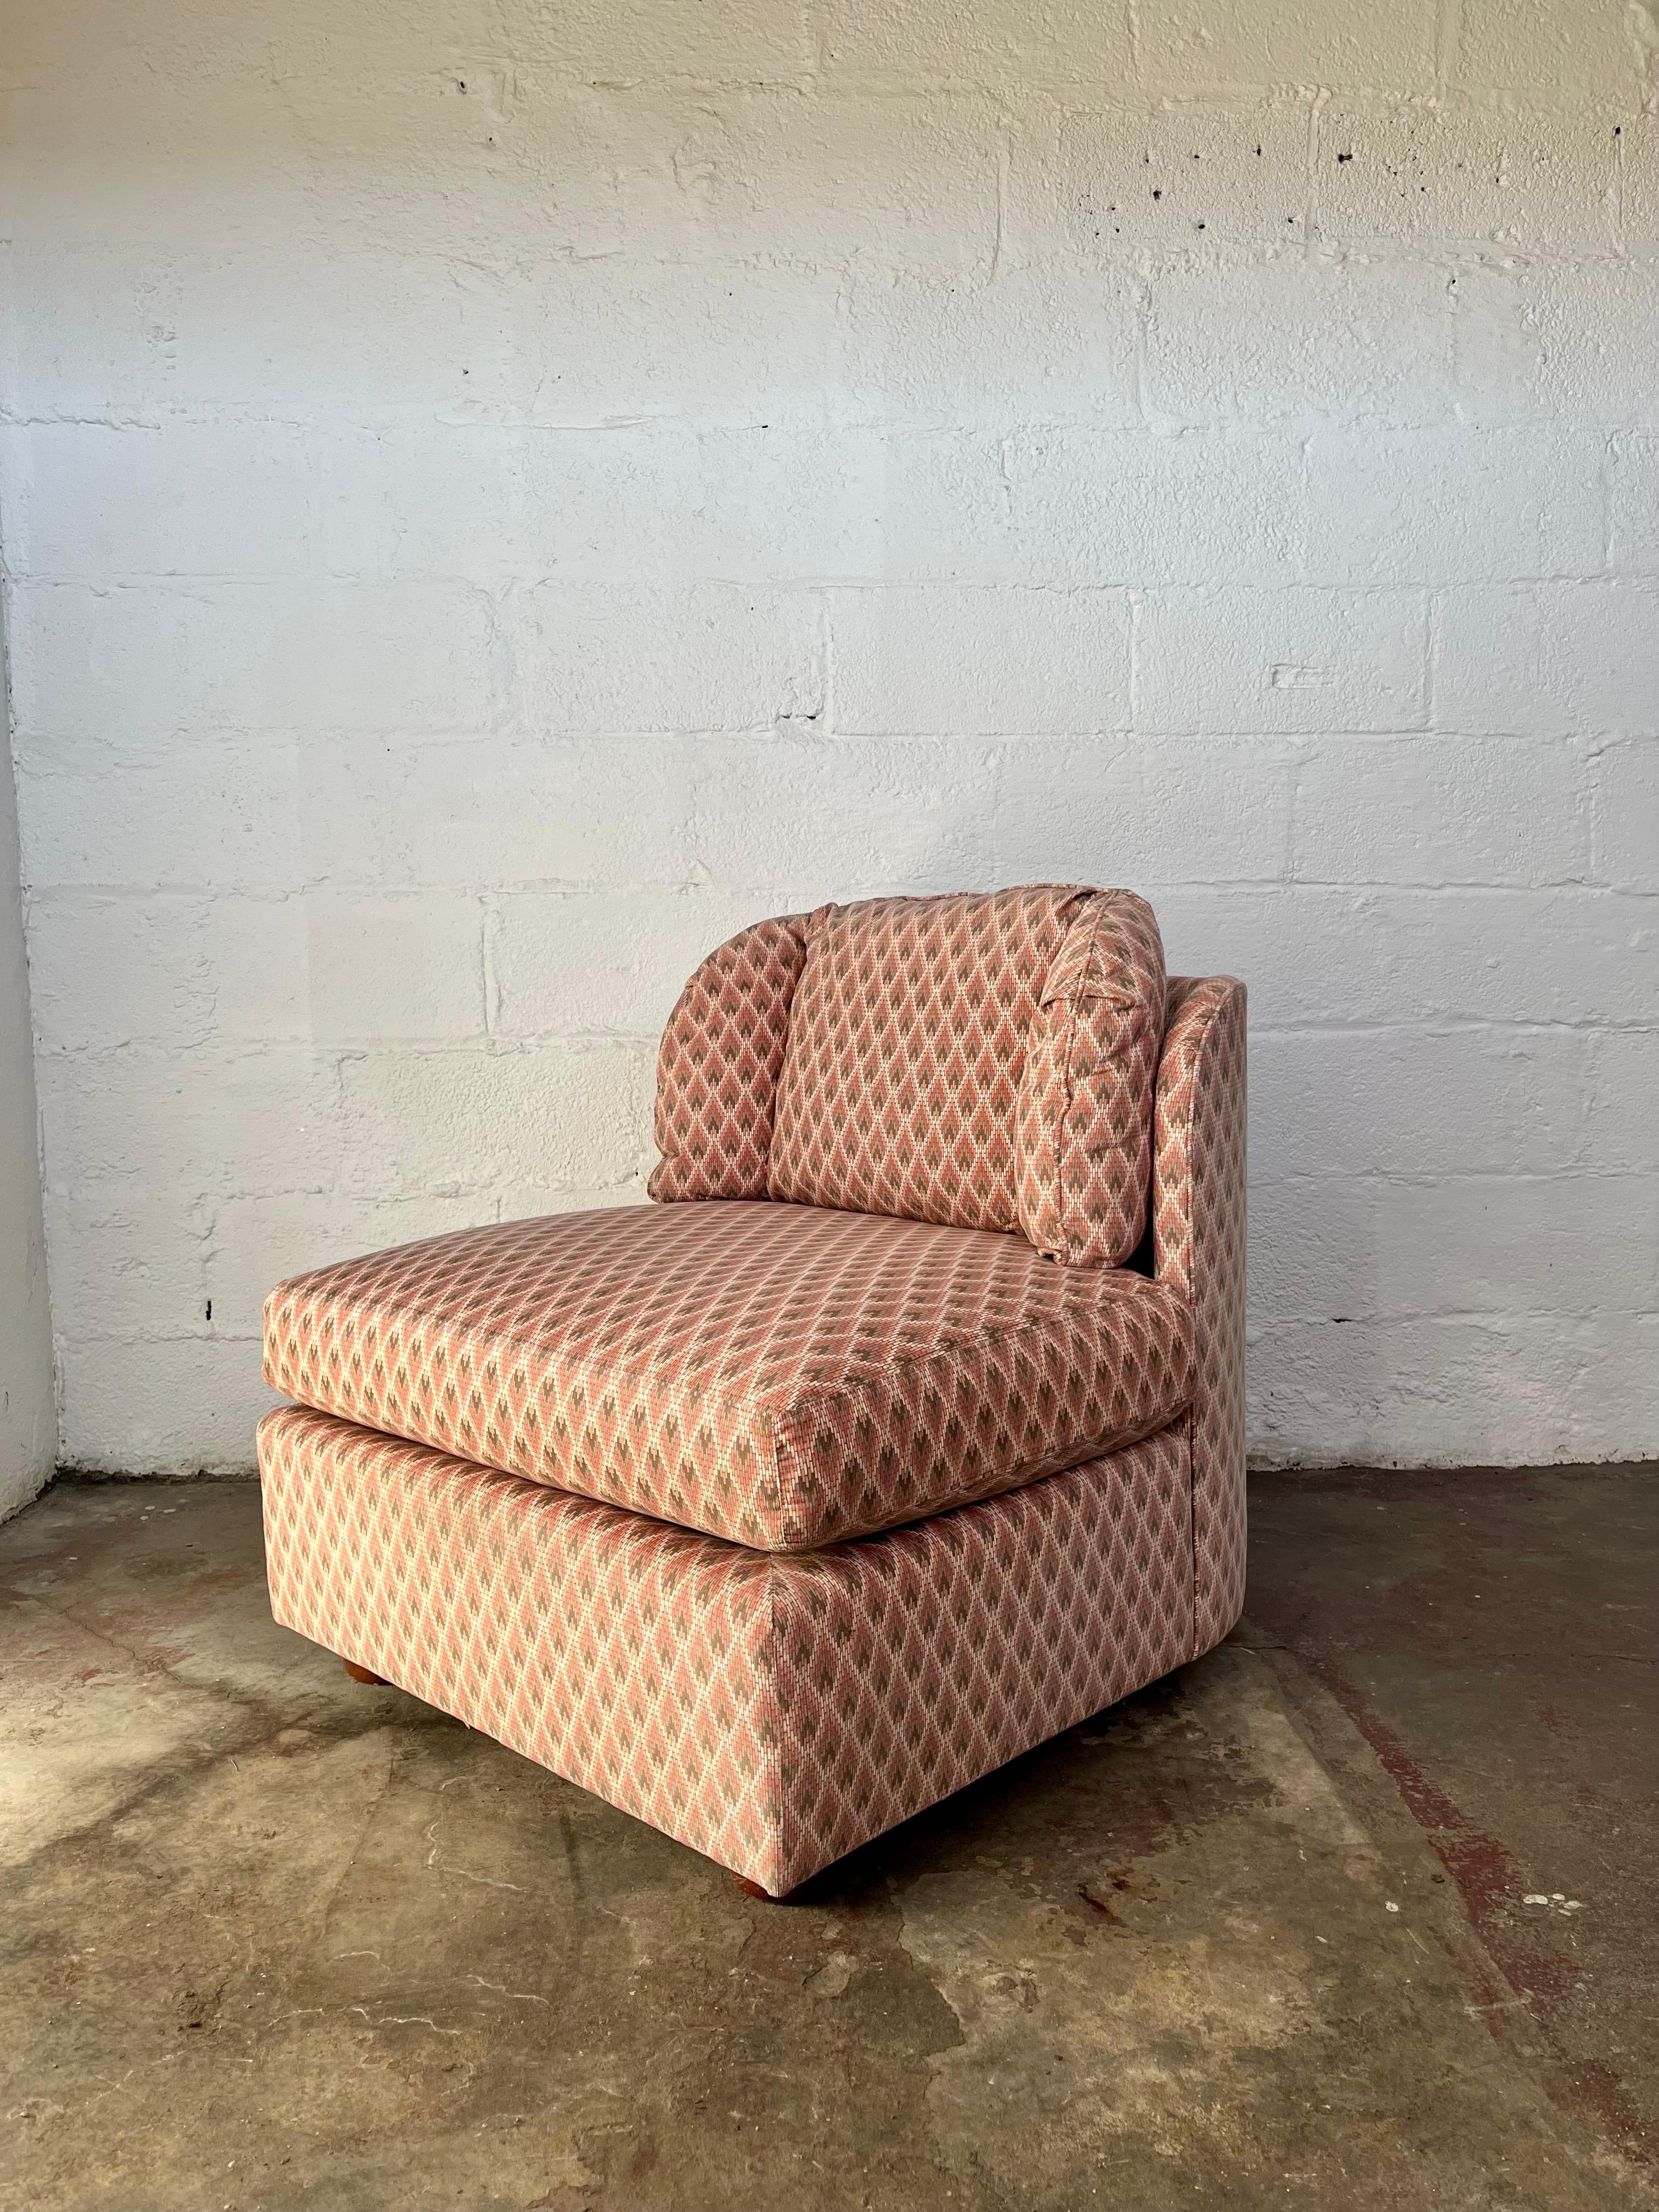 henredon sectional sofa for sale